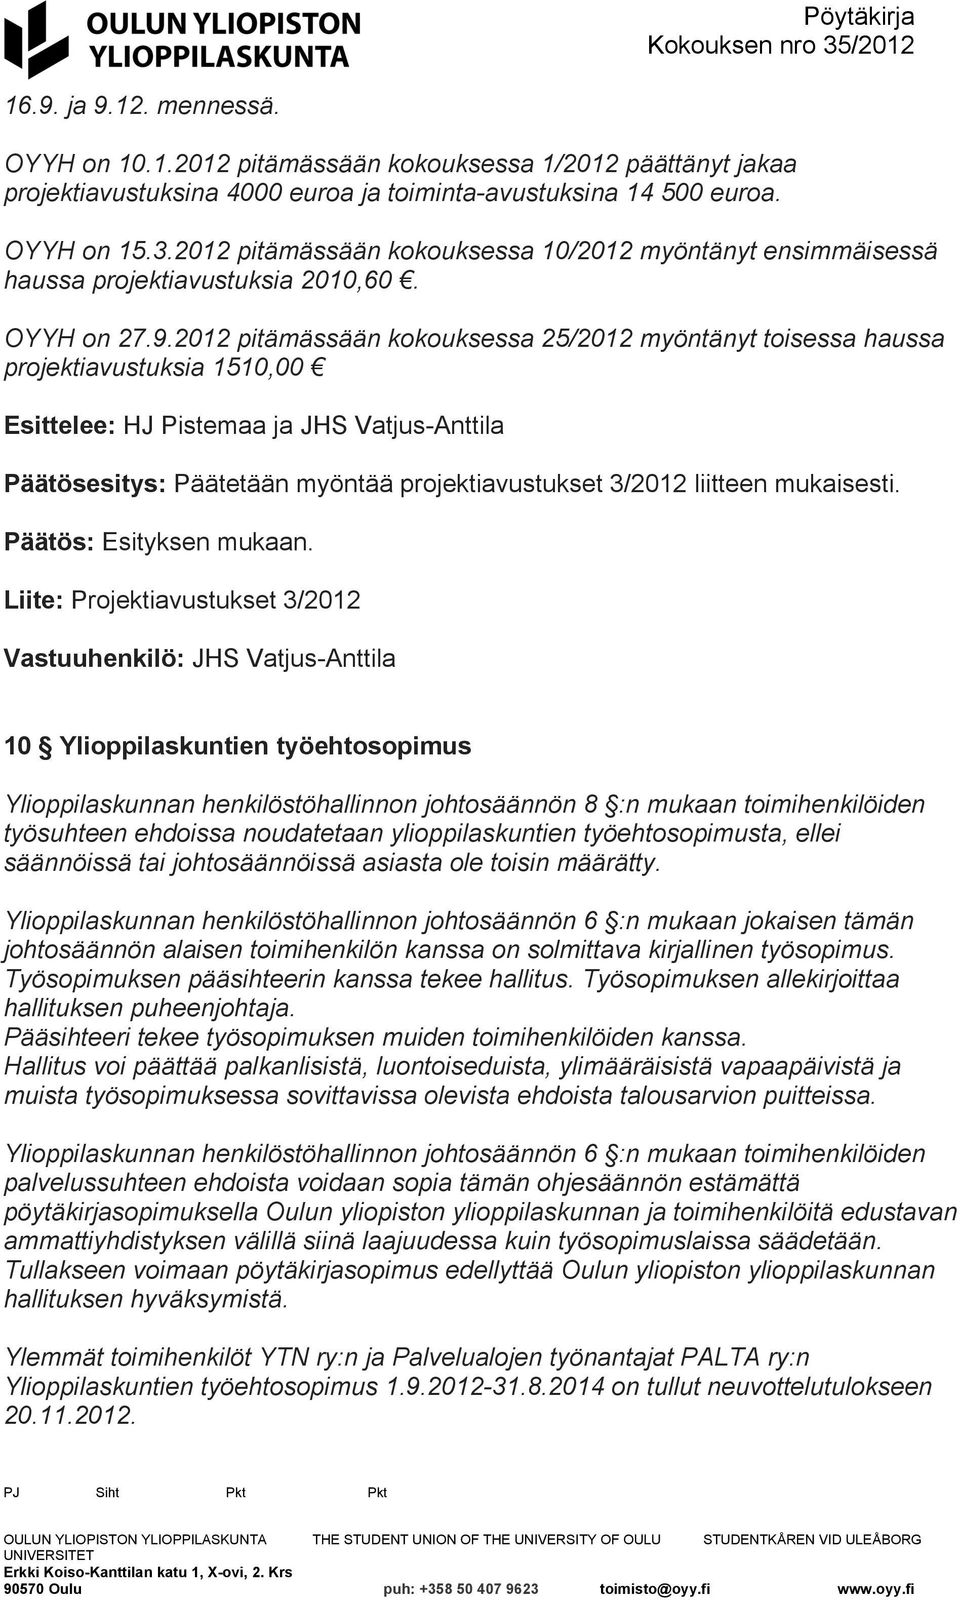 2012 pitämässään kokouksessa 25/2012 myöntänyt toisessa haussa projektiavustuksia 1510,00 Esittelee: HJ Pistemaa ja JHS Vatjus-Anttila Päätösesitys: Päätetään myöntää projektiavustukset 3/2012